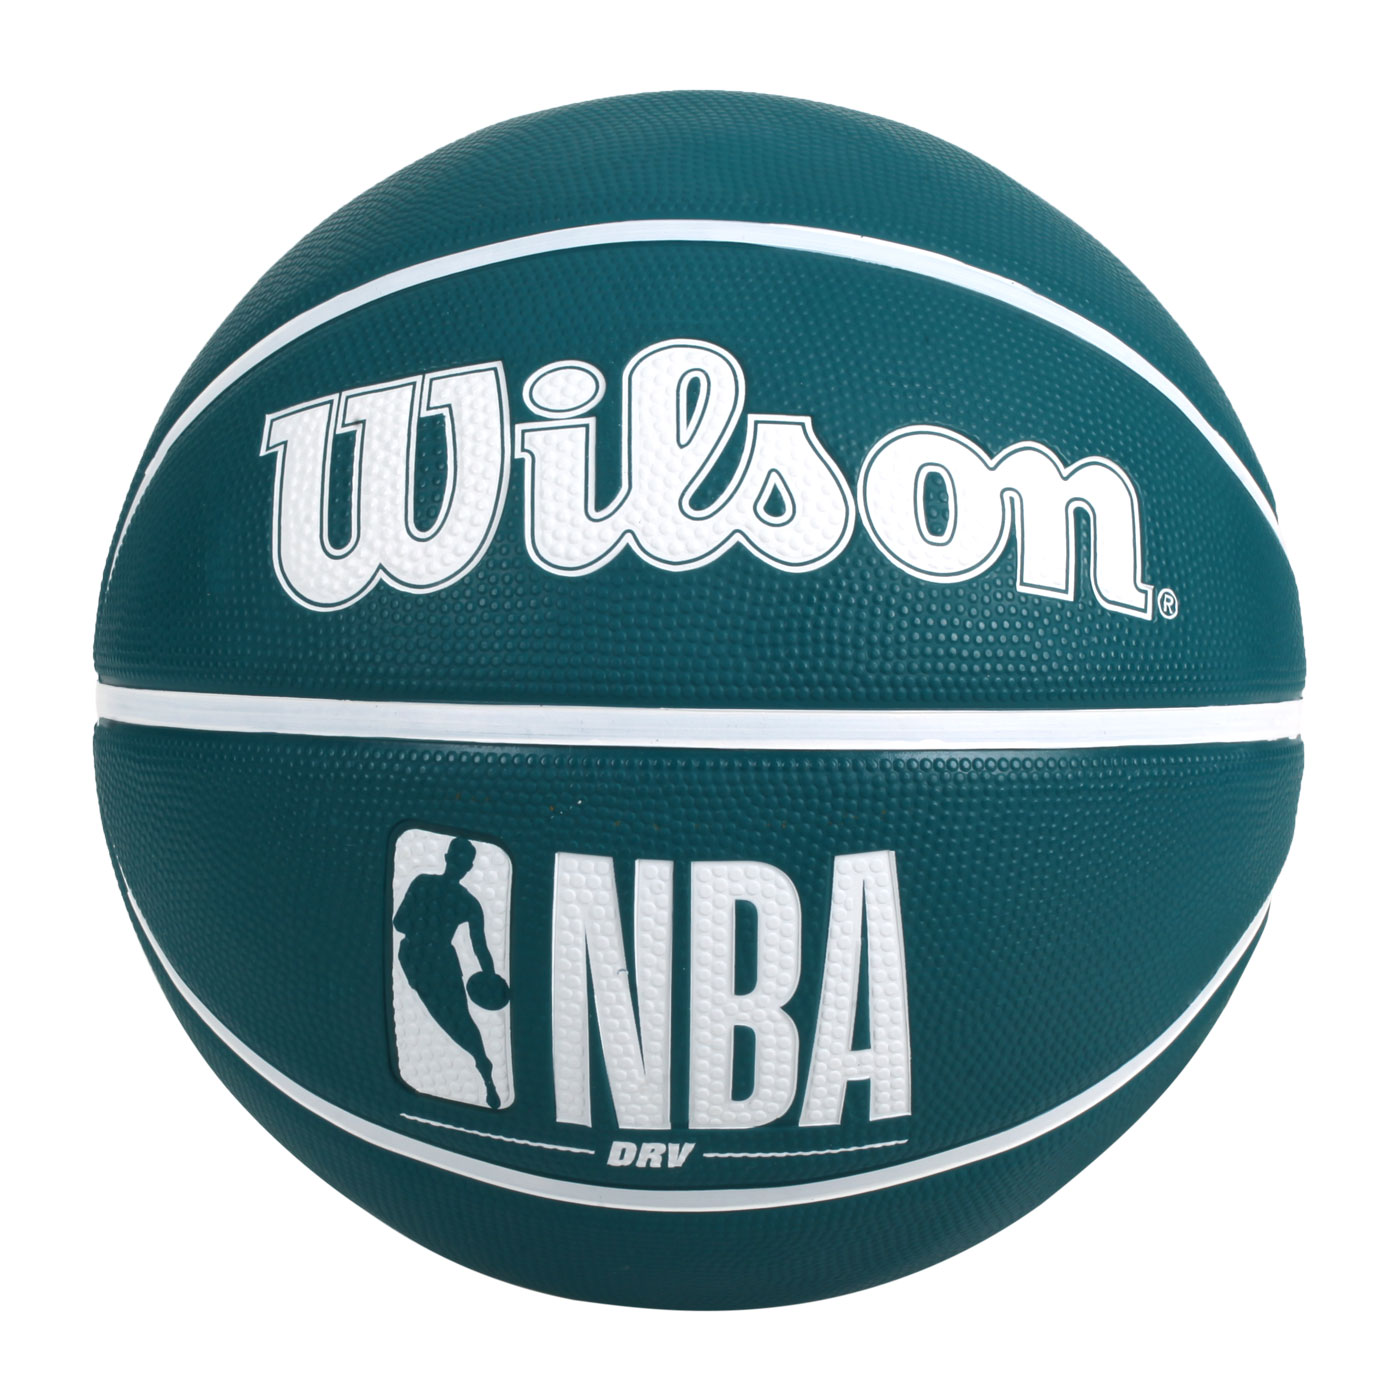 WILSON NBA DRV系列 橡膠籃球 #7 WTB9301XB07 - 鴨綠白